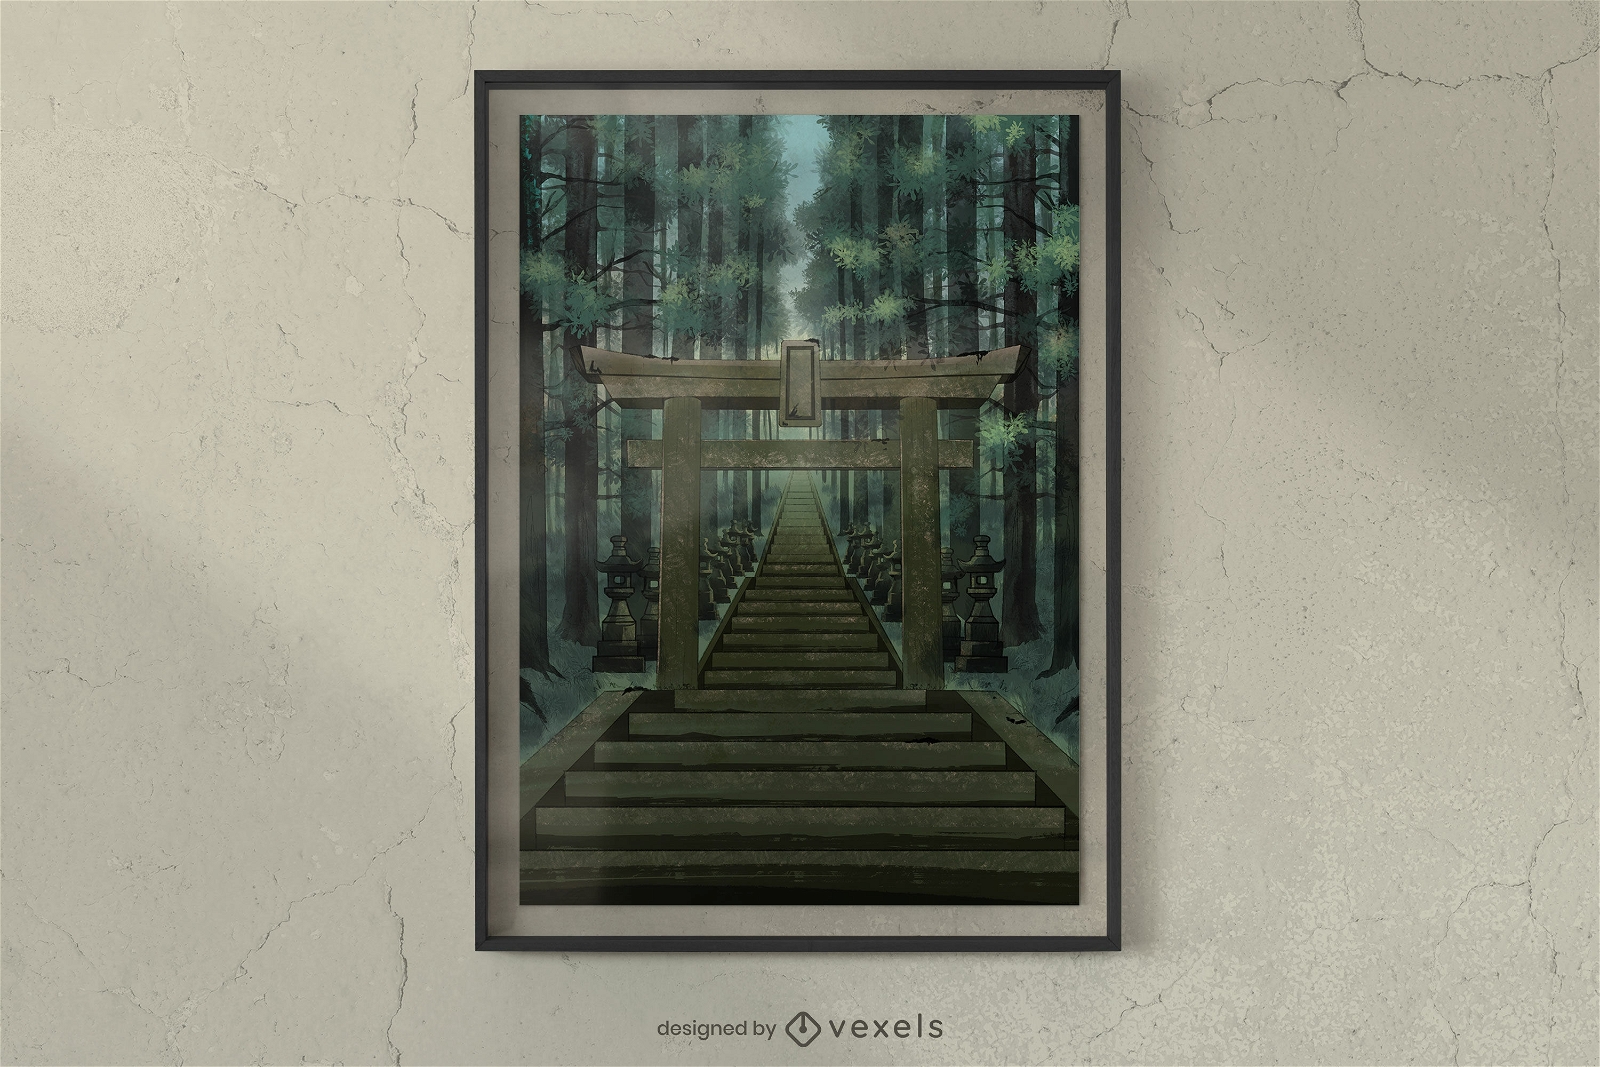 Mystisches japanisches Tempelplakatdesign